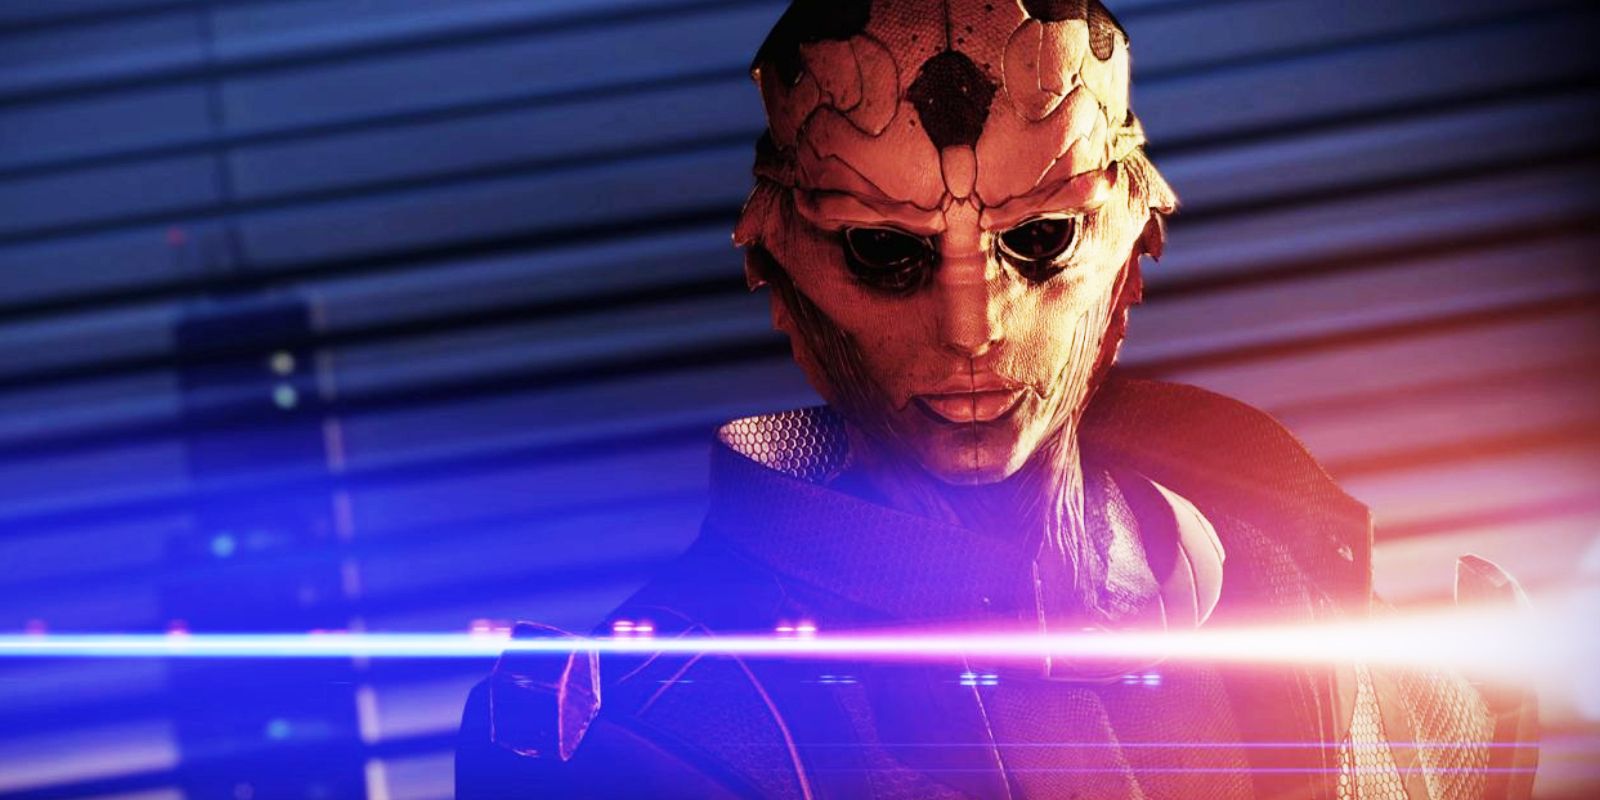 Thane in battle in Mass Effect 3.